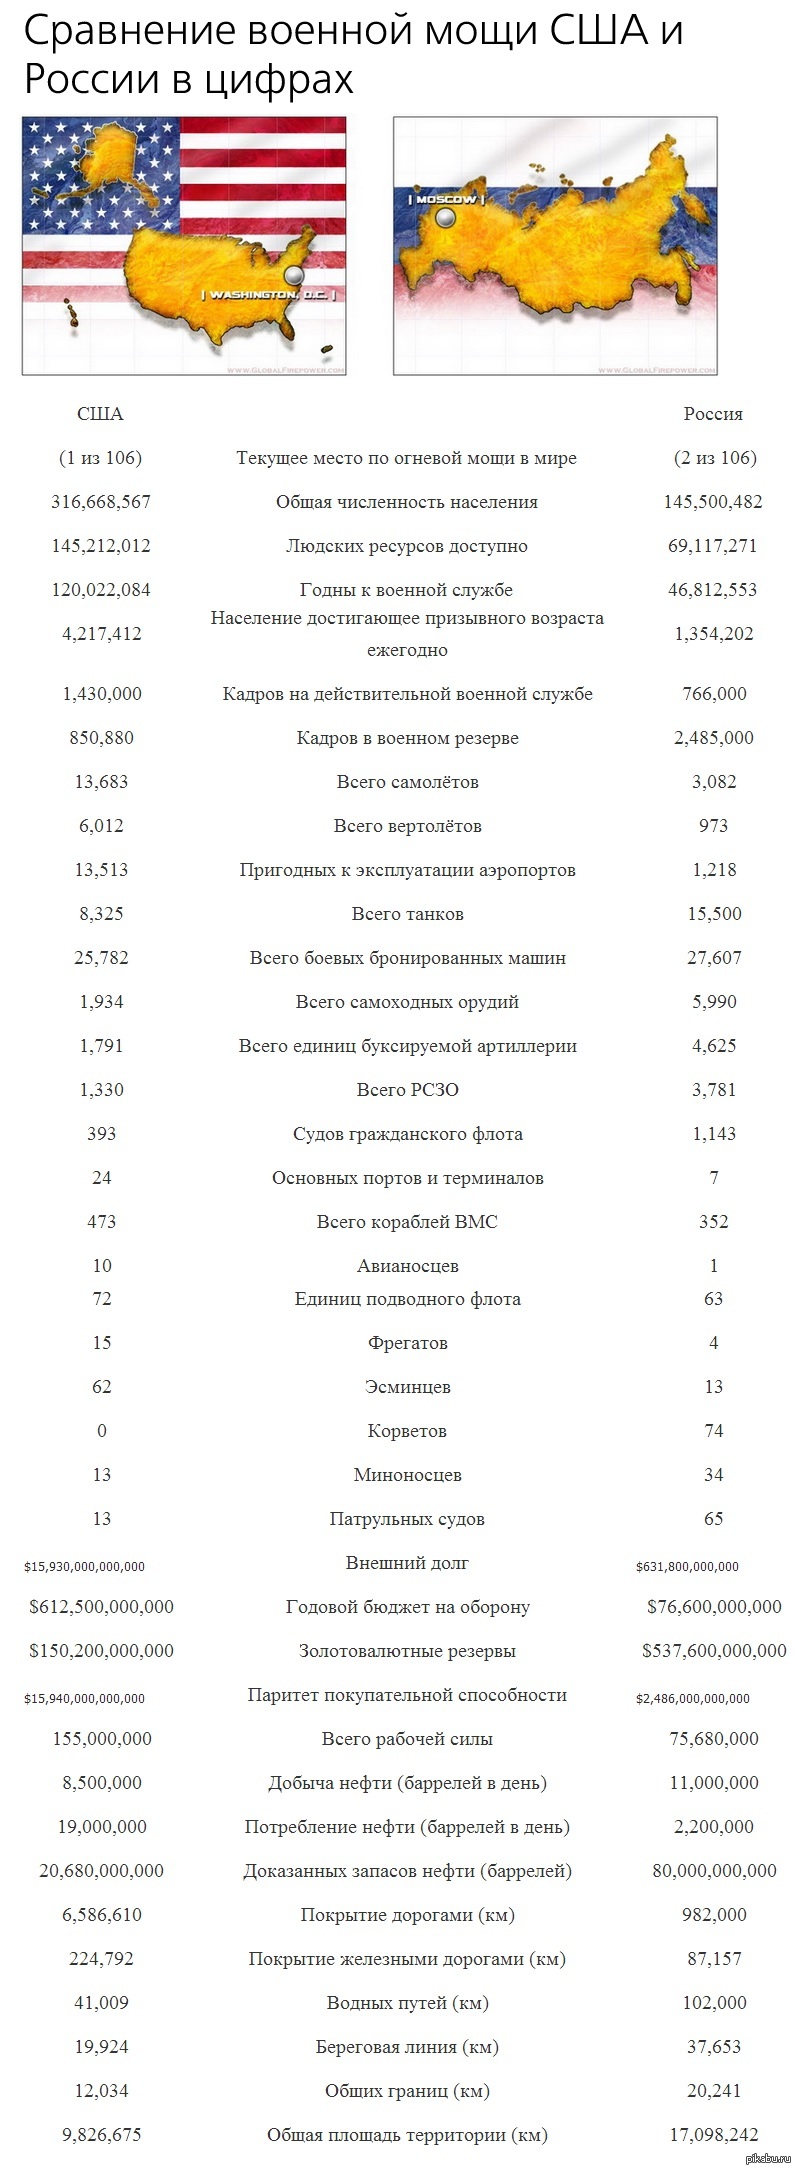 сравнение россии и сша